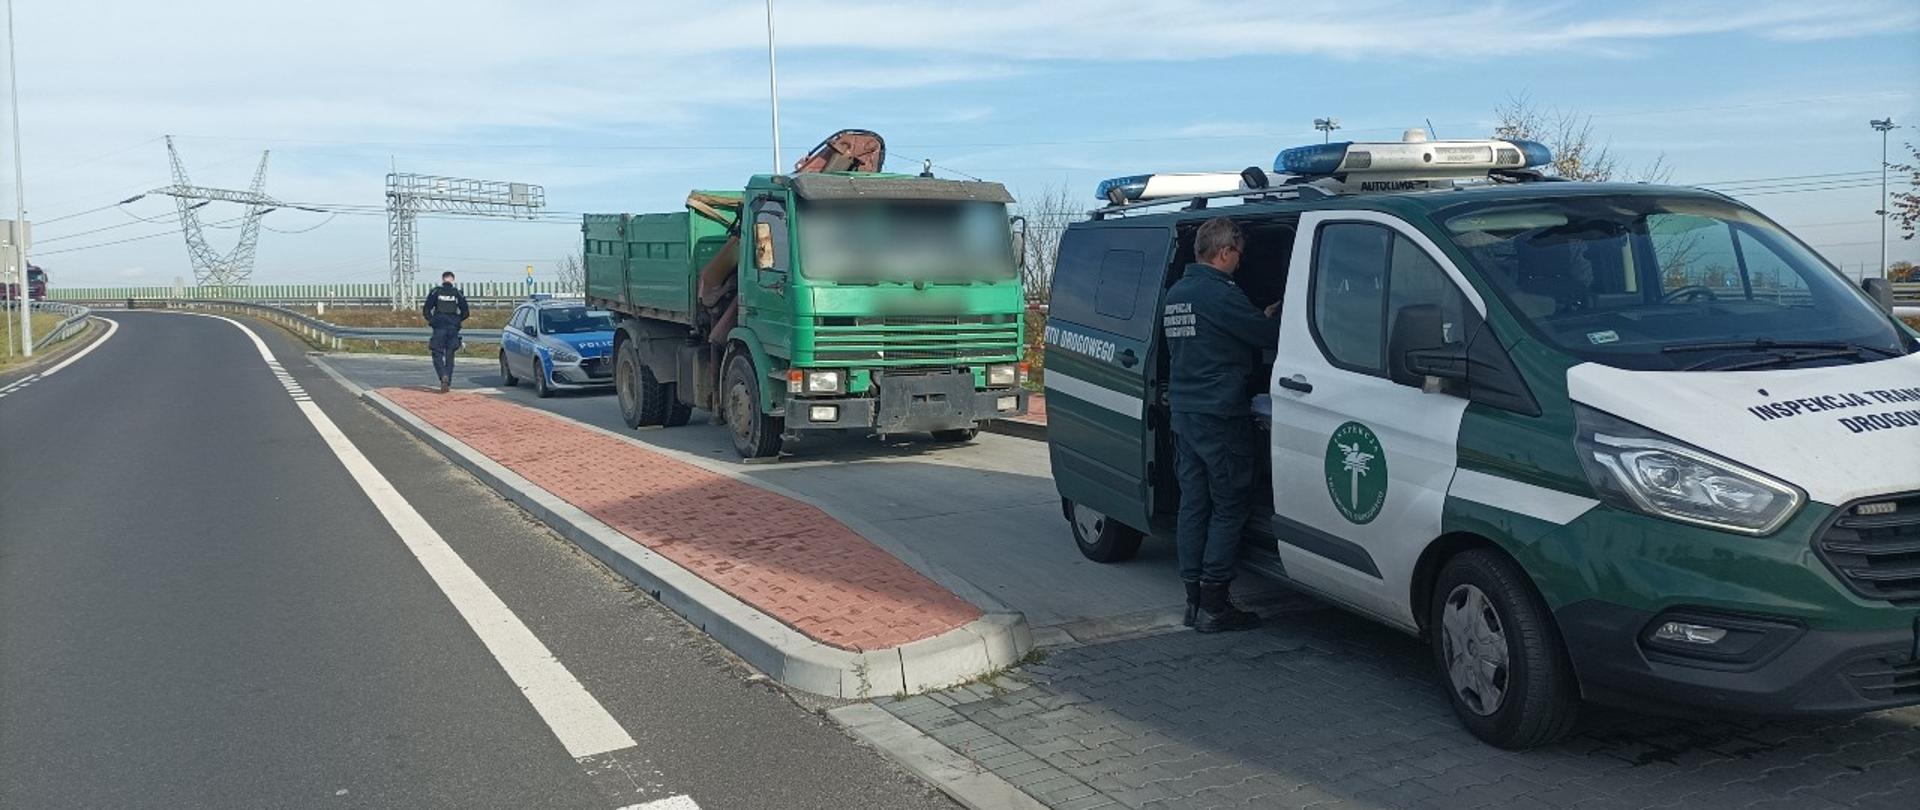 Wywrotka zatrzymana do kontroli przez patrol z Głównego Inspektoratu Transportu Drogowego w pobliżu Poznania. Na miejscu są też wezwani funkcjonariusze Policji.